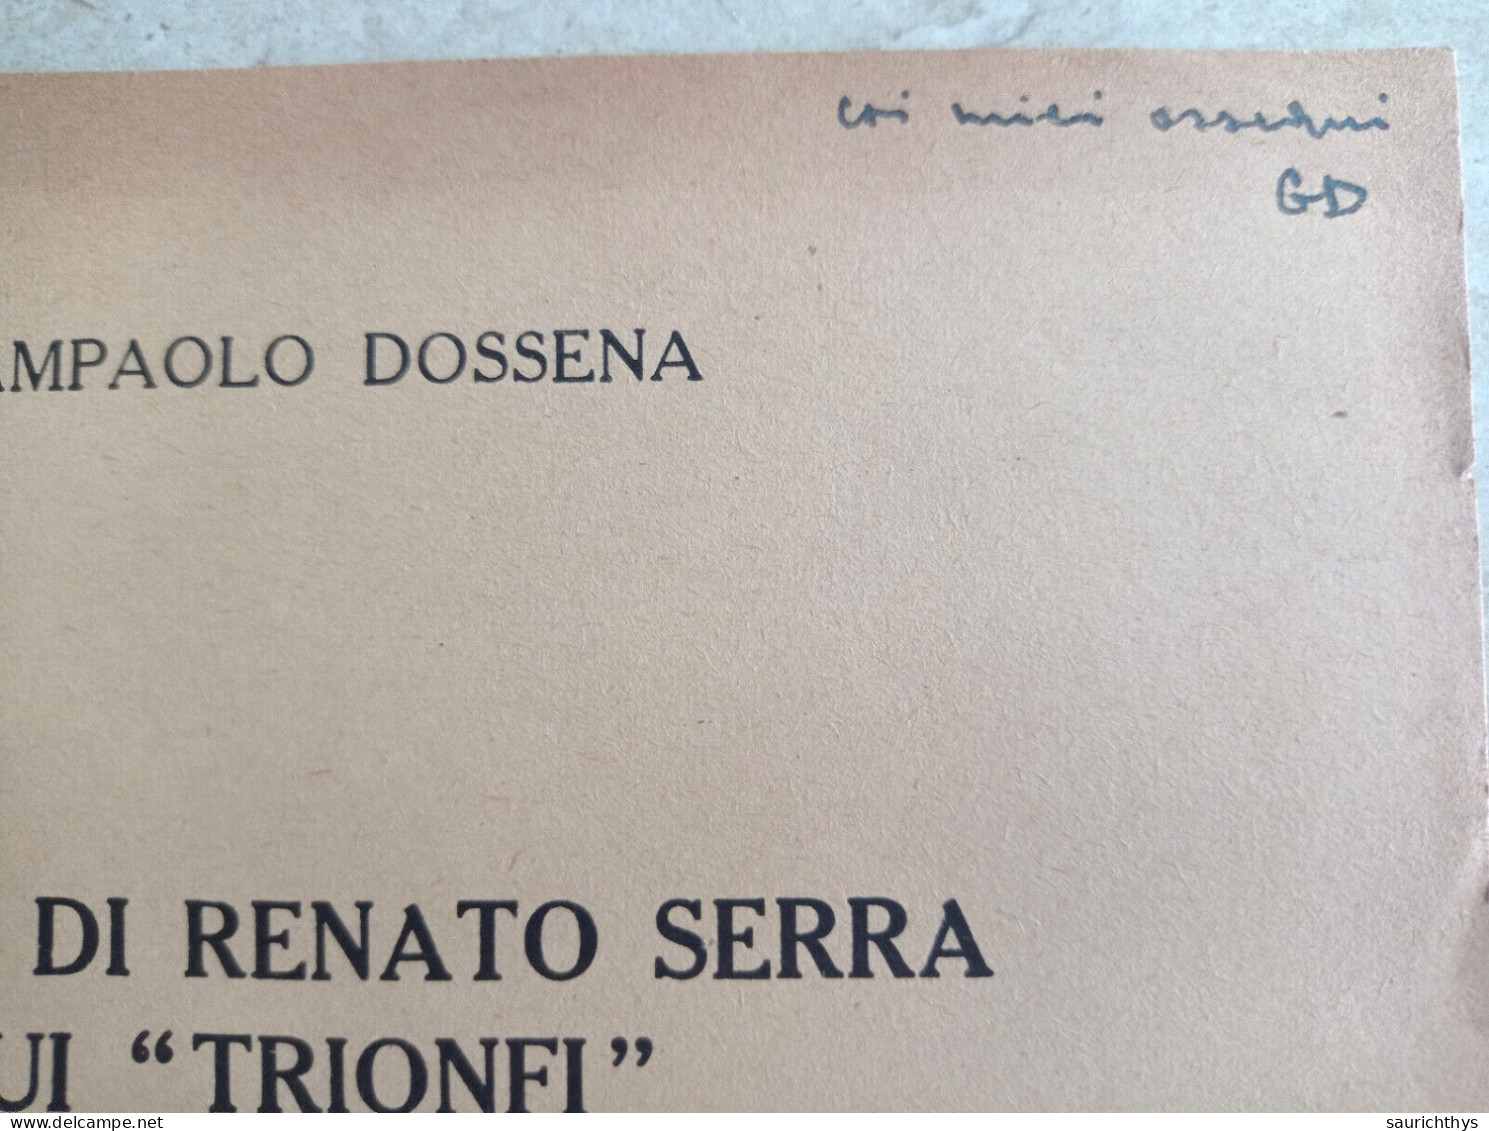 La Tesi Di Renato Serra Sui Trionfi Autografo Giampaolo Dossena Da Cremona Estratto Da Convivium 1956 - Geschiedenis, Biografie, Filosofie